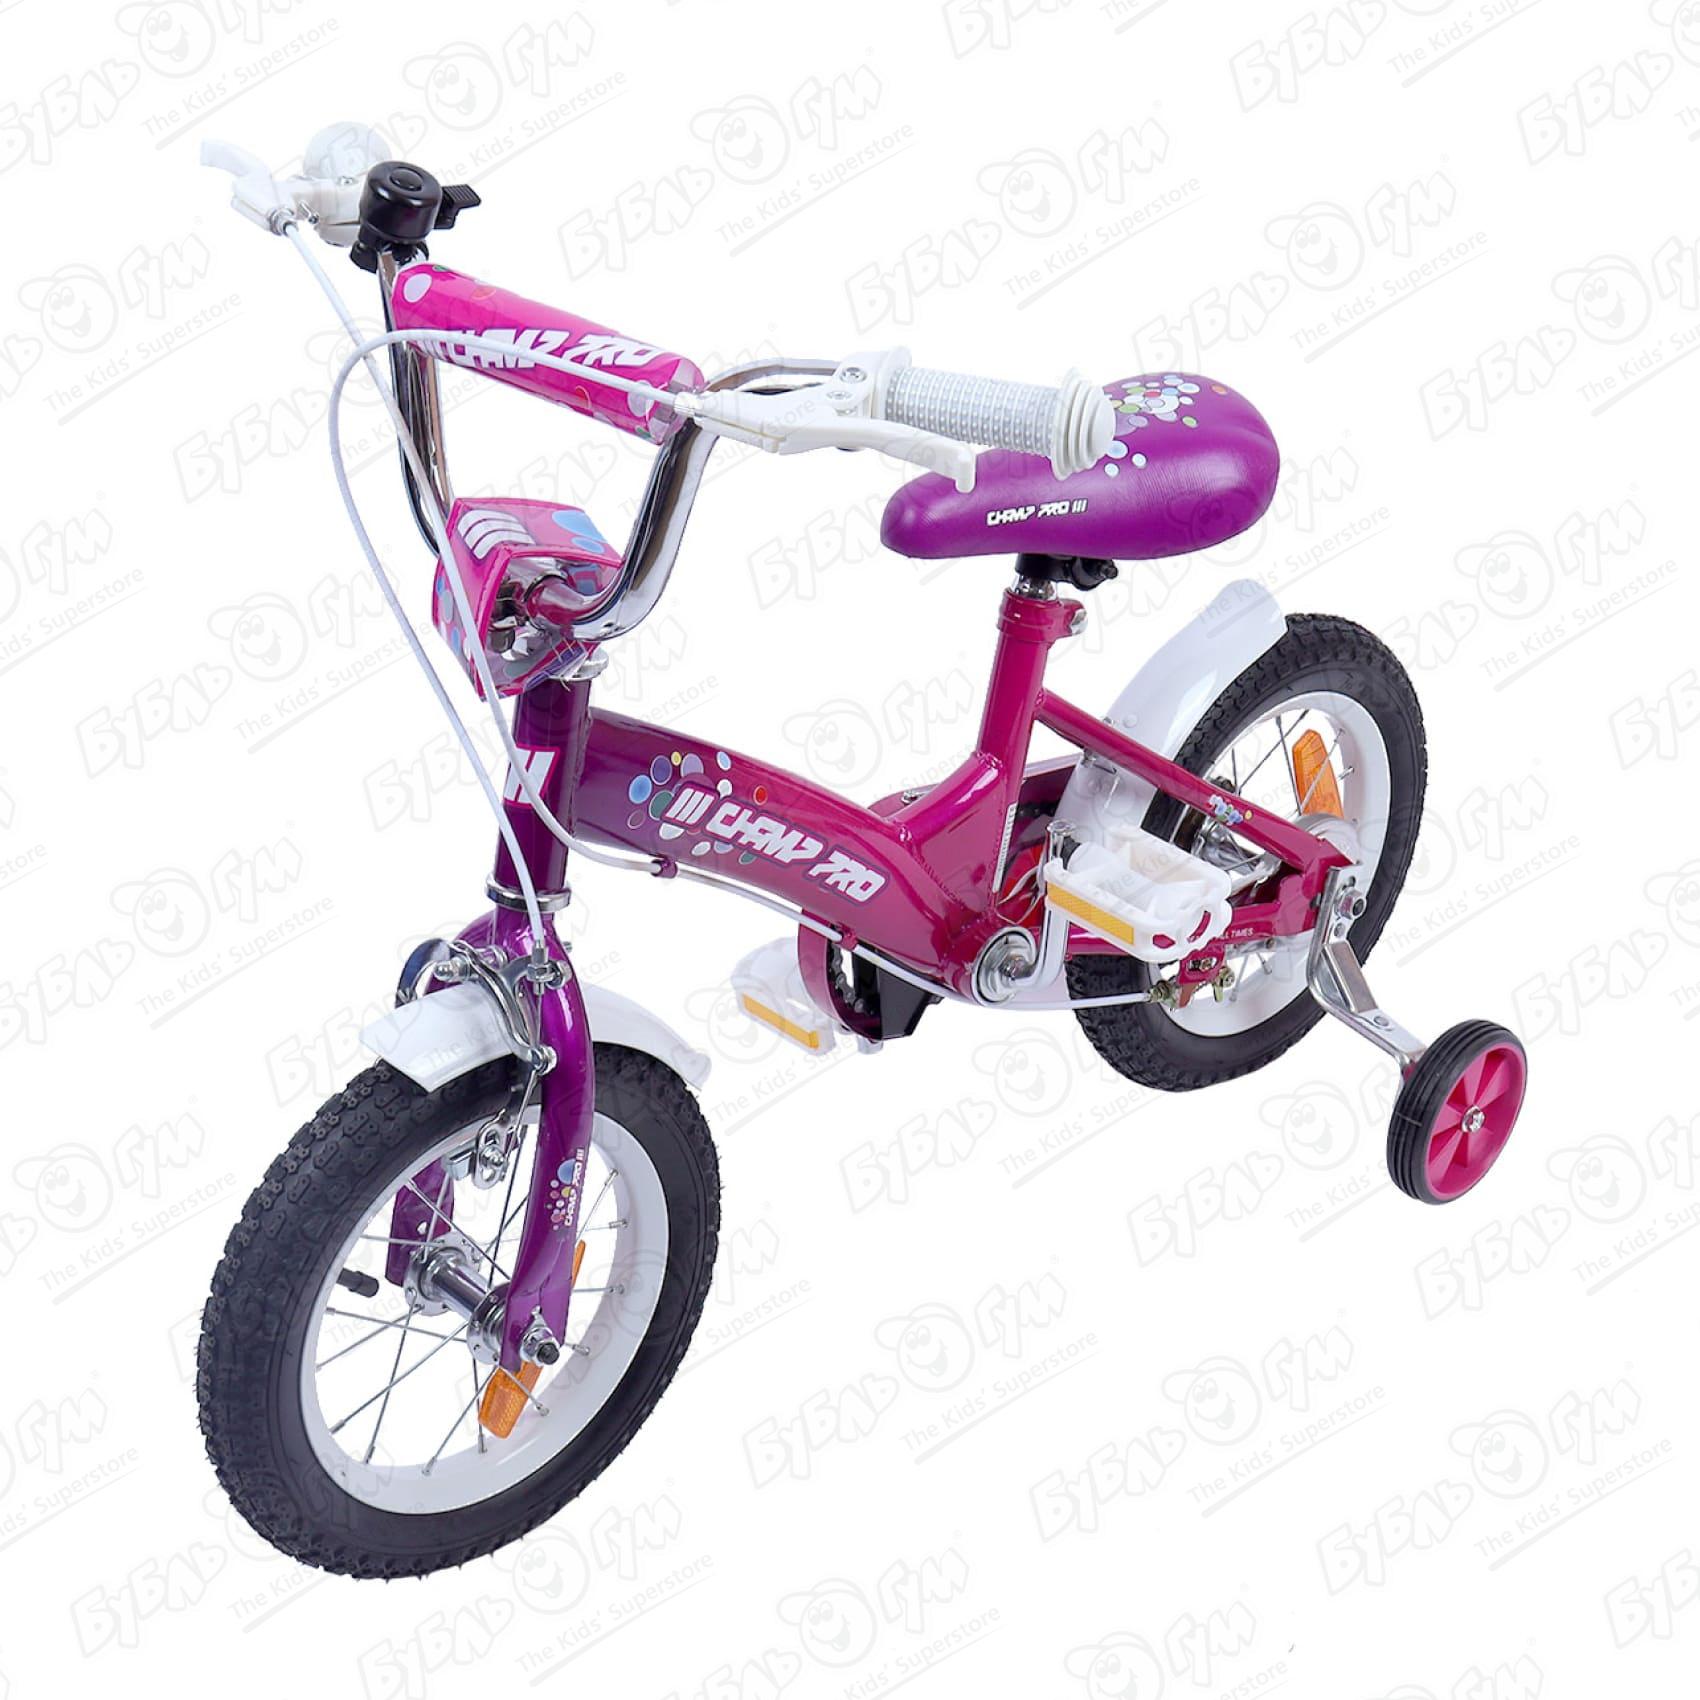 Велосипед Champ Pro G12 детский четырехколесный розовый